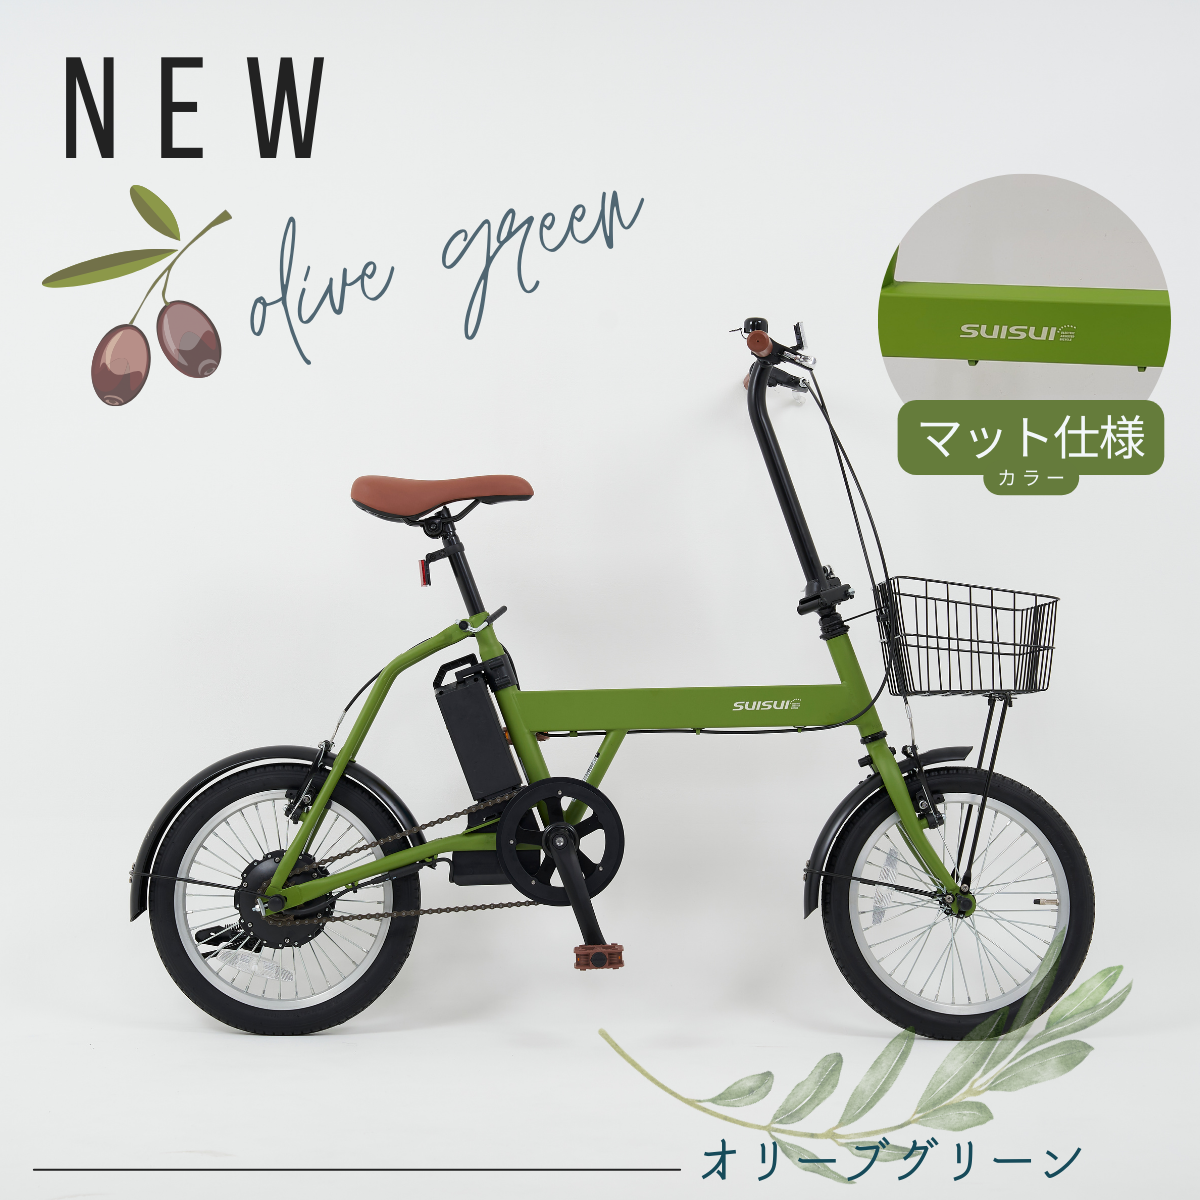 出来れば早めに】電動自転車「SUISUI」 - 愛知県の自転車